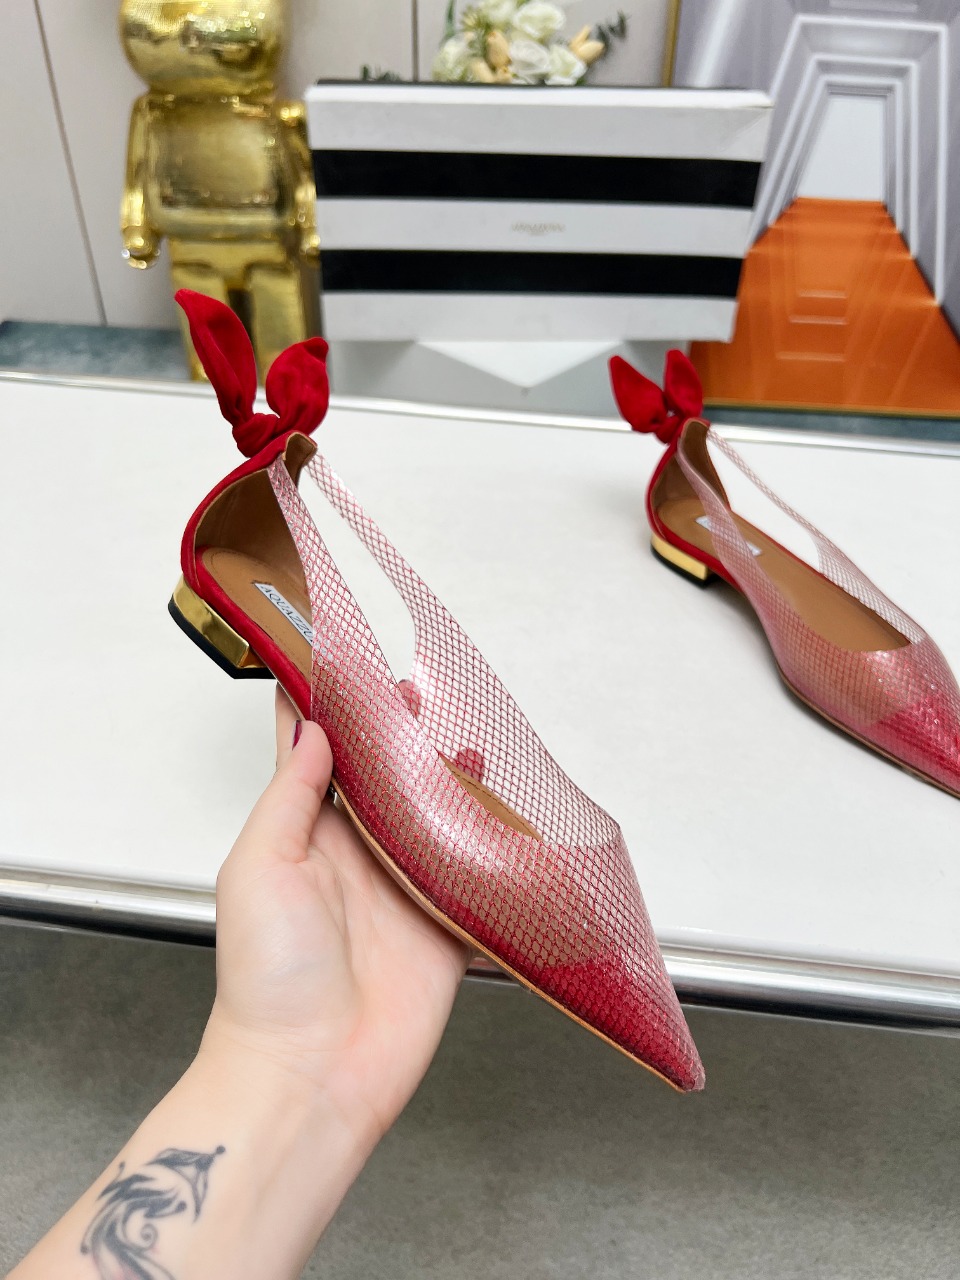 菠萝春夏专柜新品平底凉鞋去专柜的第一眼就看中了！精致的鞋楦后跟很特别的兔耳朵设计很吸引人眼球原版复刻顶级